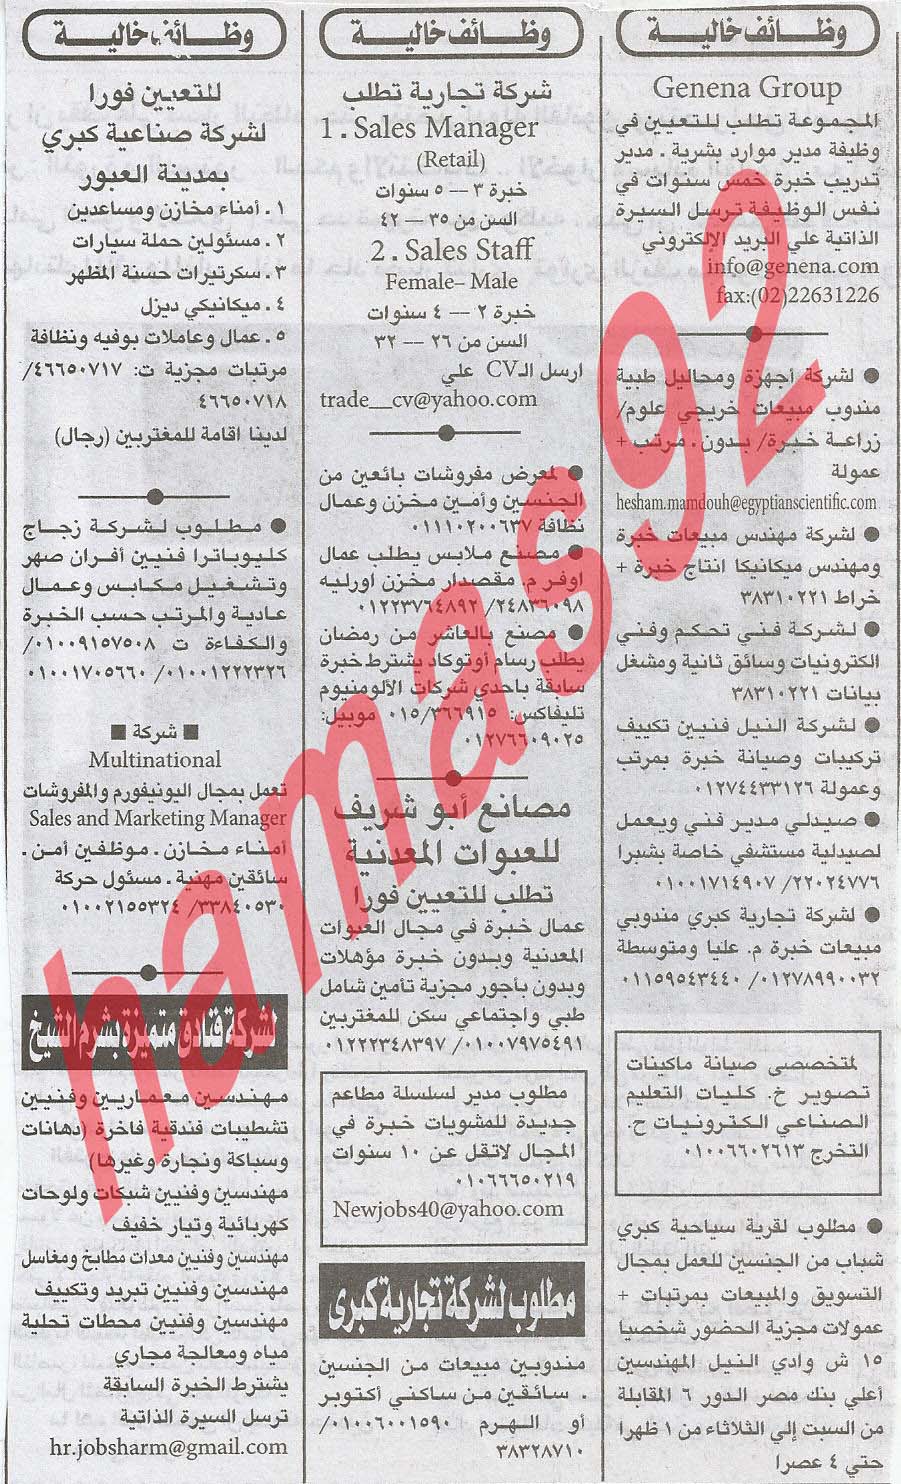 وظائف خالية فى جريدة الاهرام الجمعة 29-03-2013 11